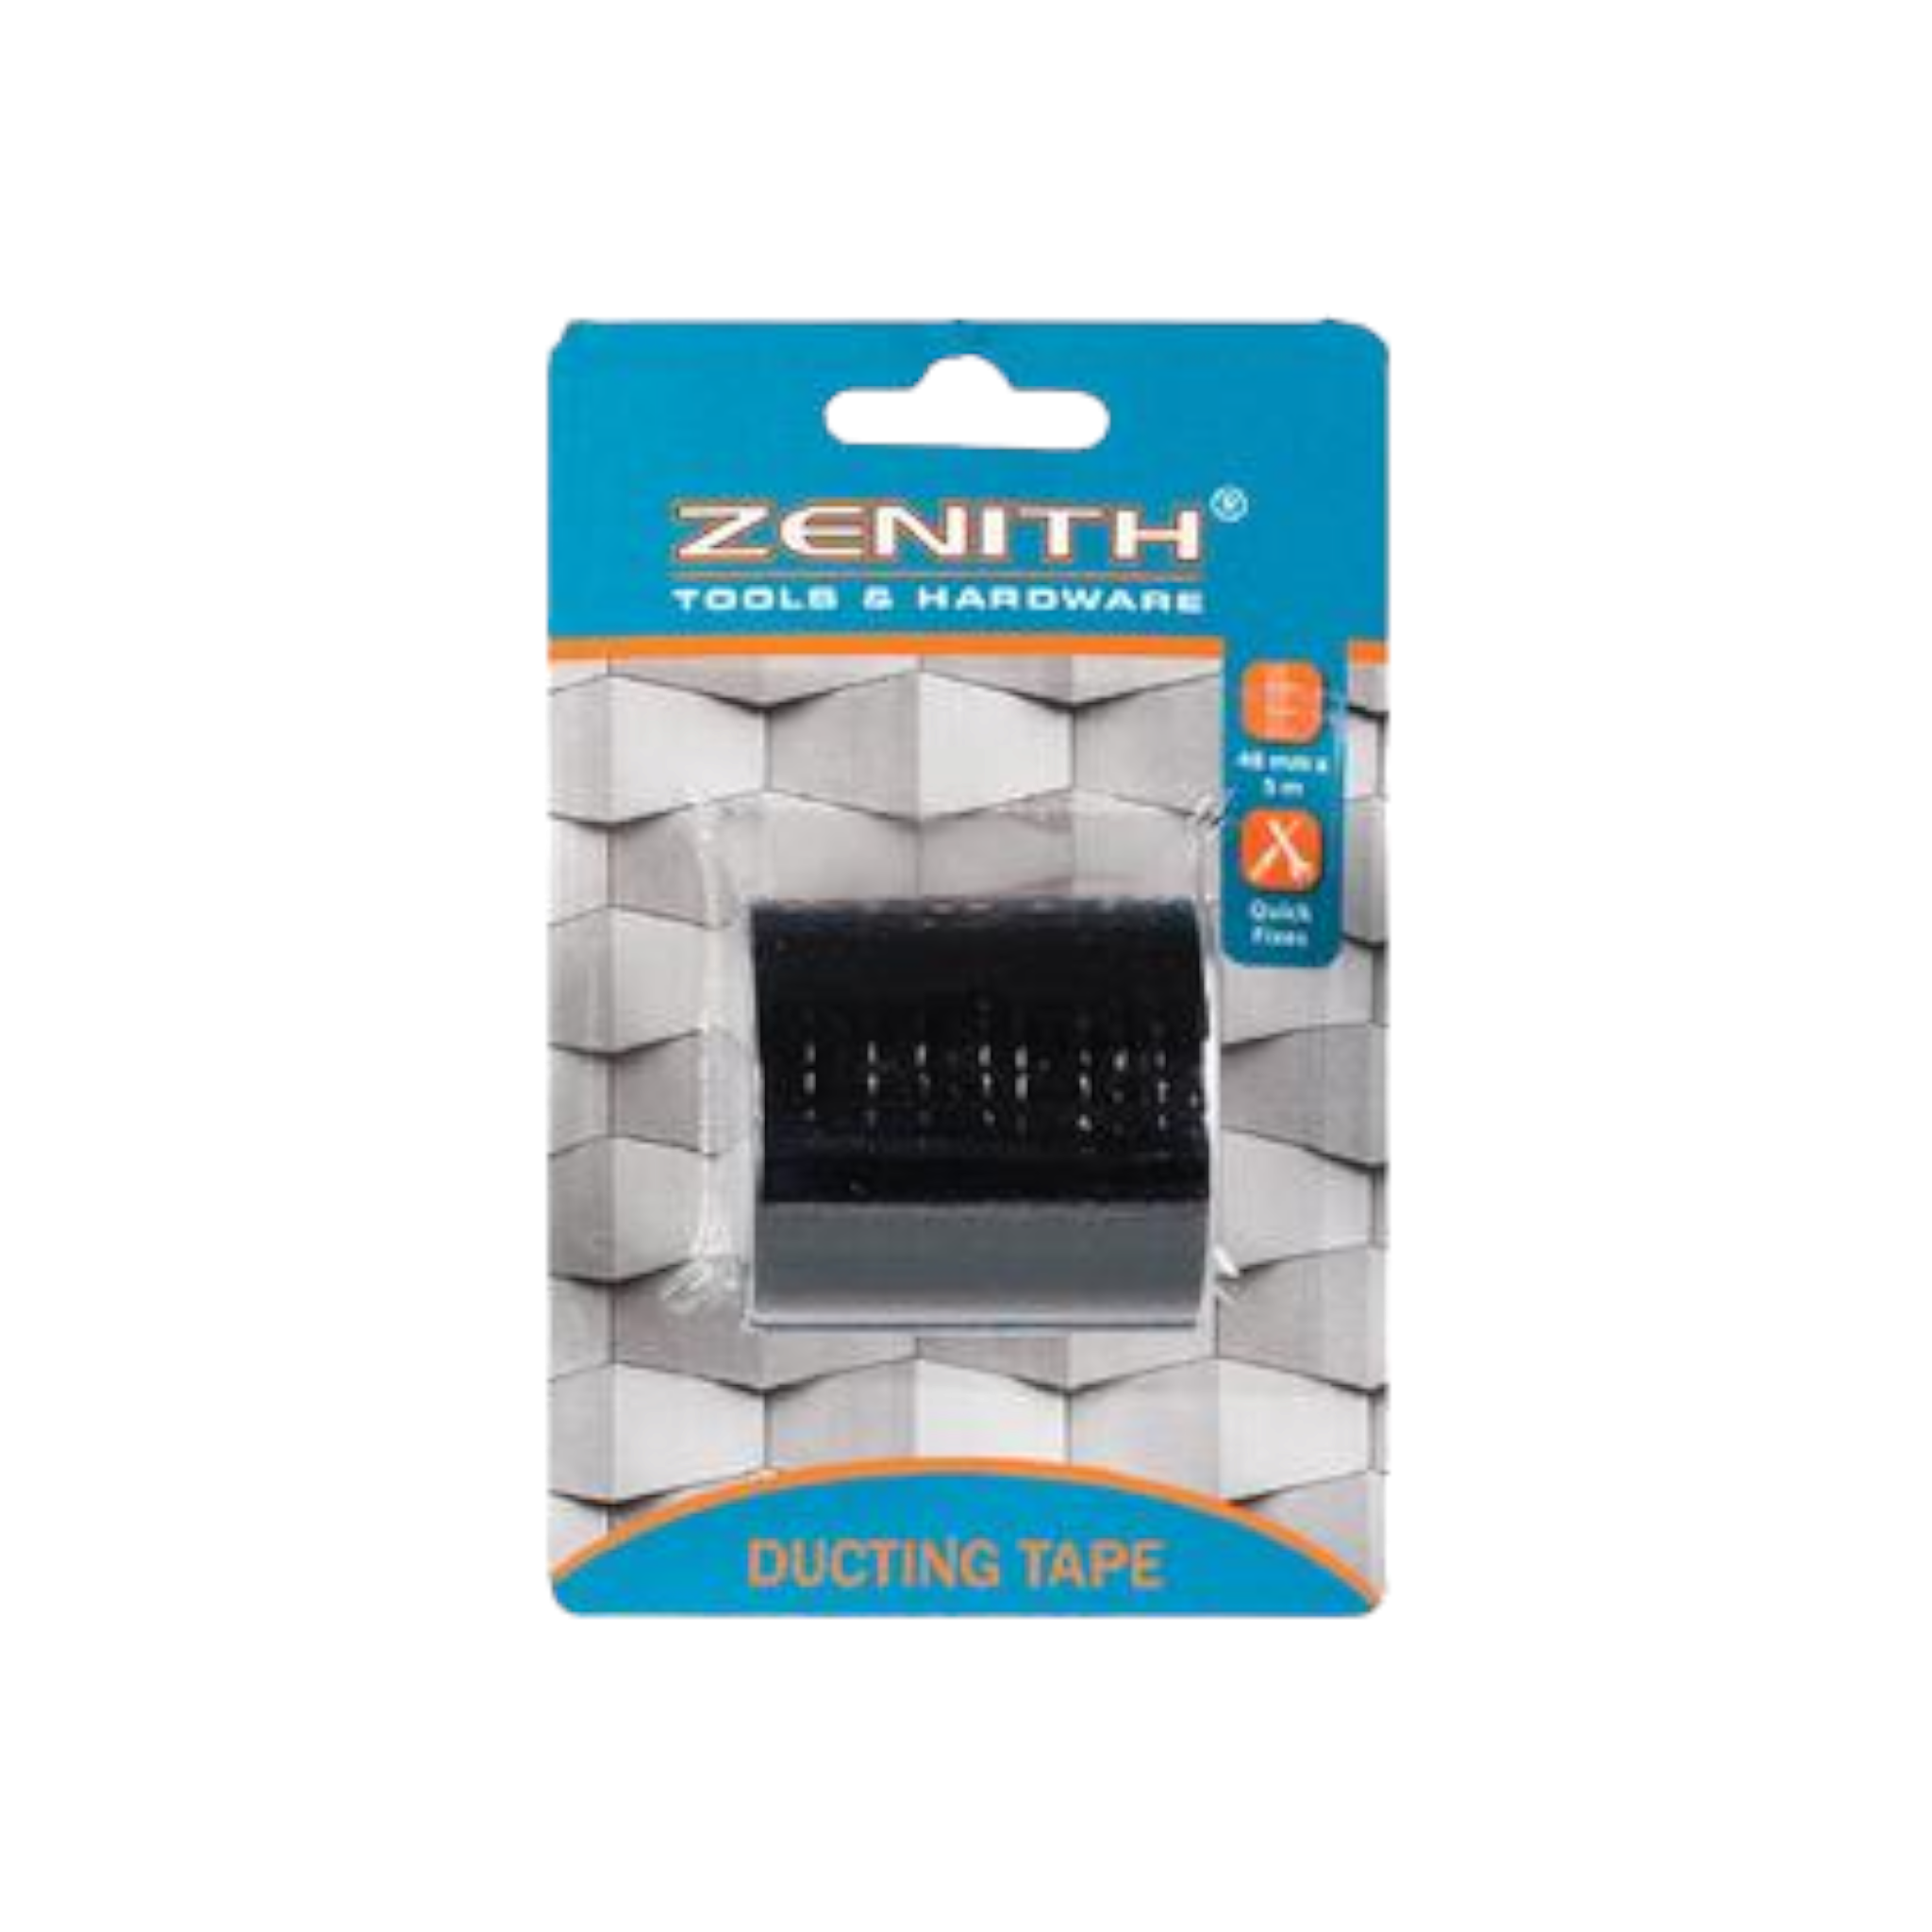 Zenith Duct Tape Black 48mmx5m